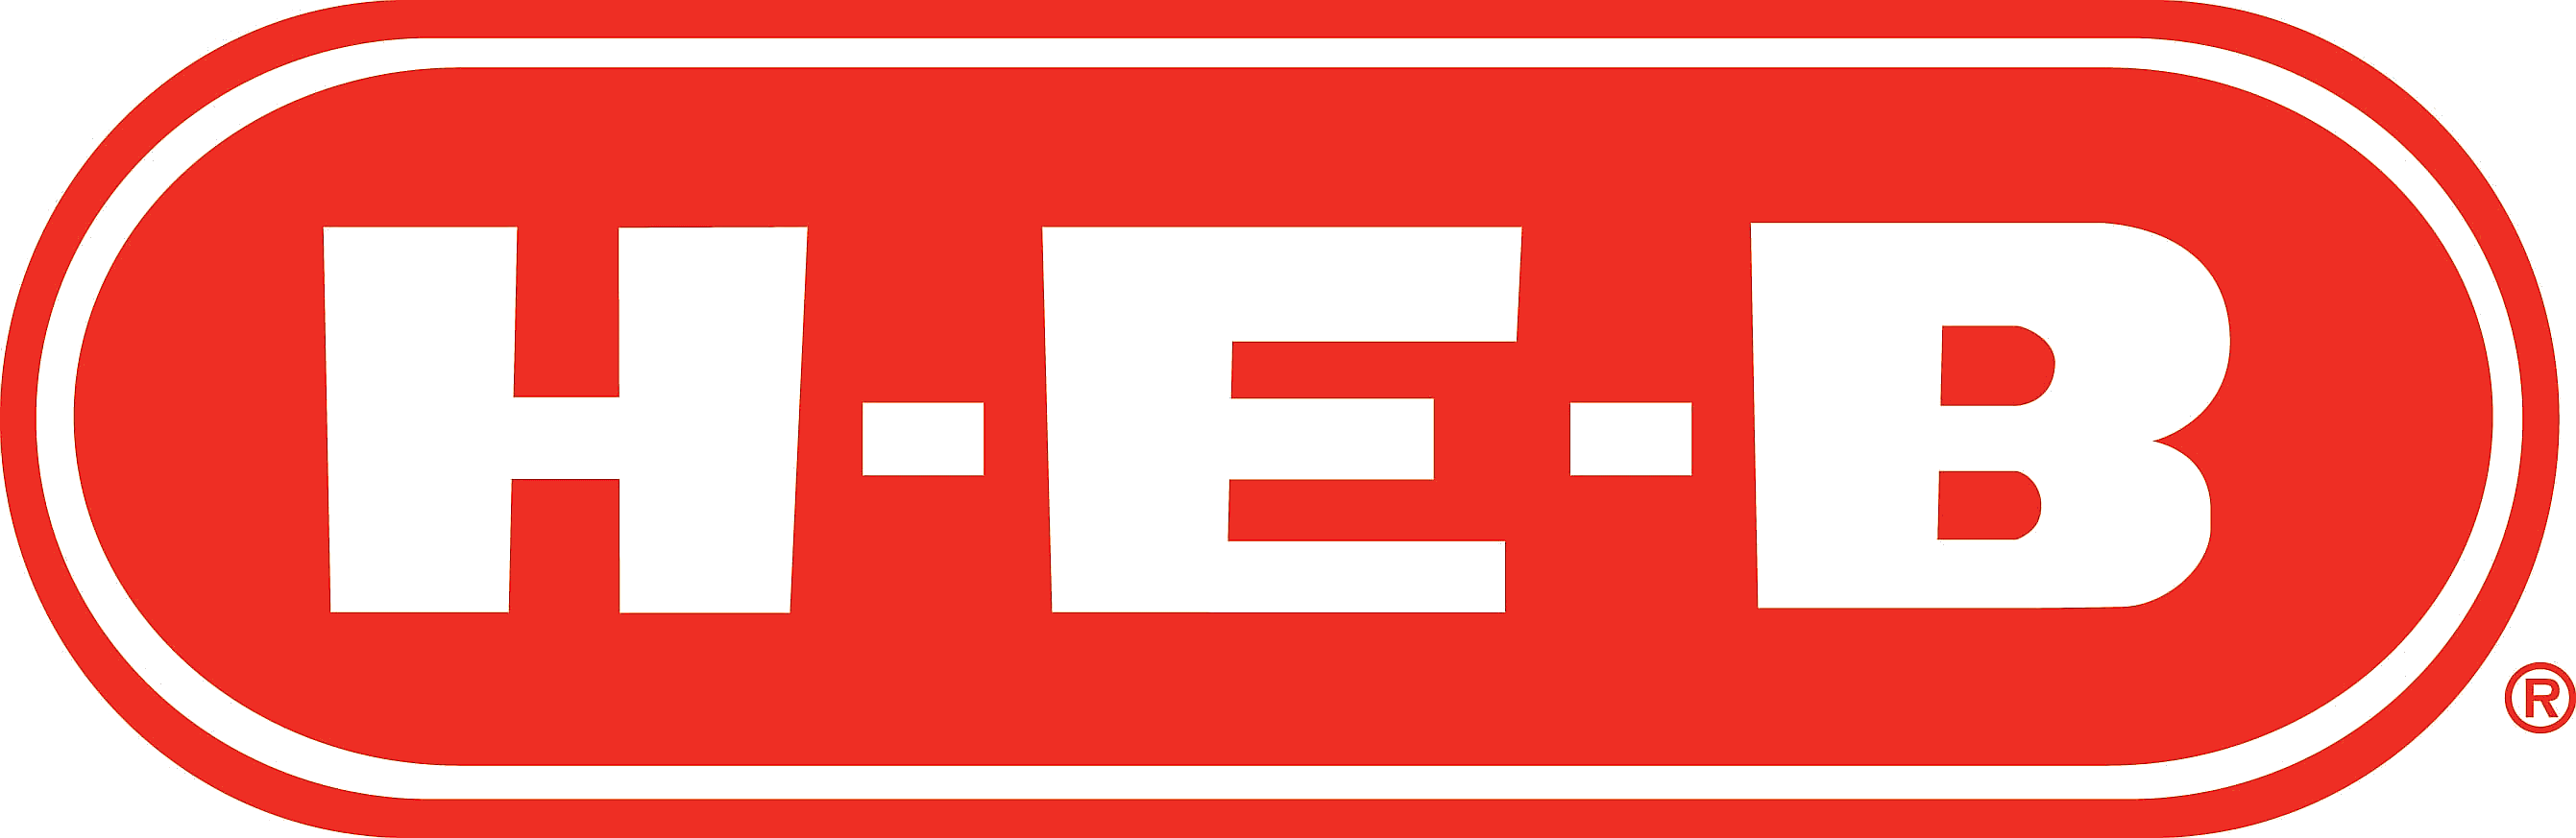 H-E-B logo icon.